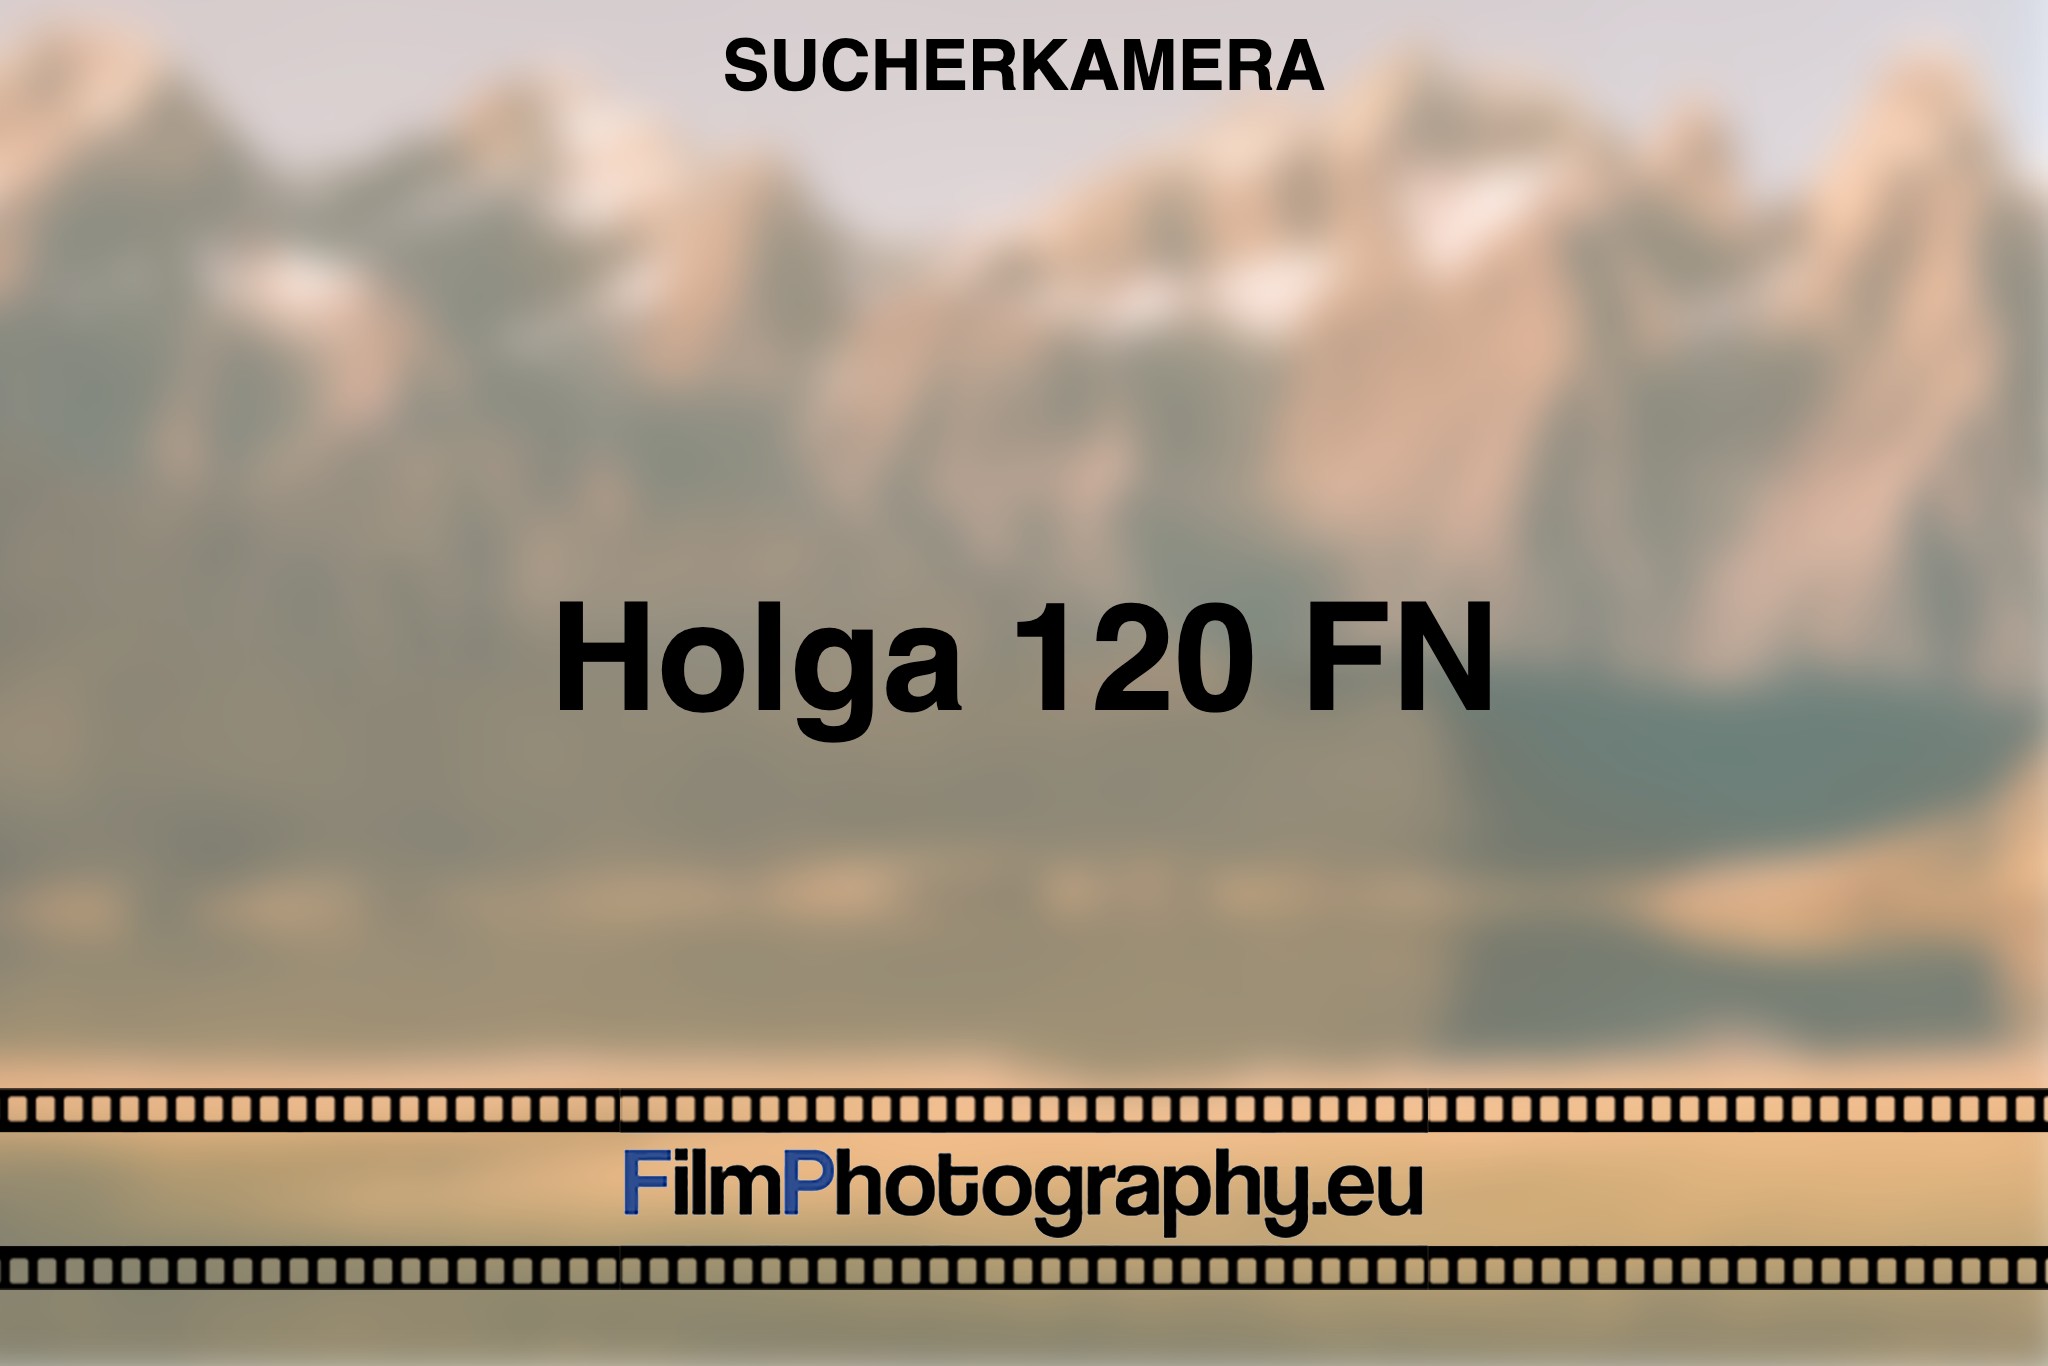 holga-120-fn-sucherkamera-bnv